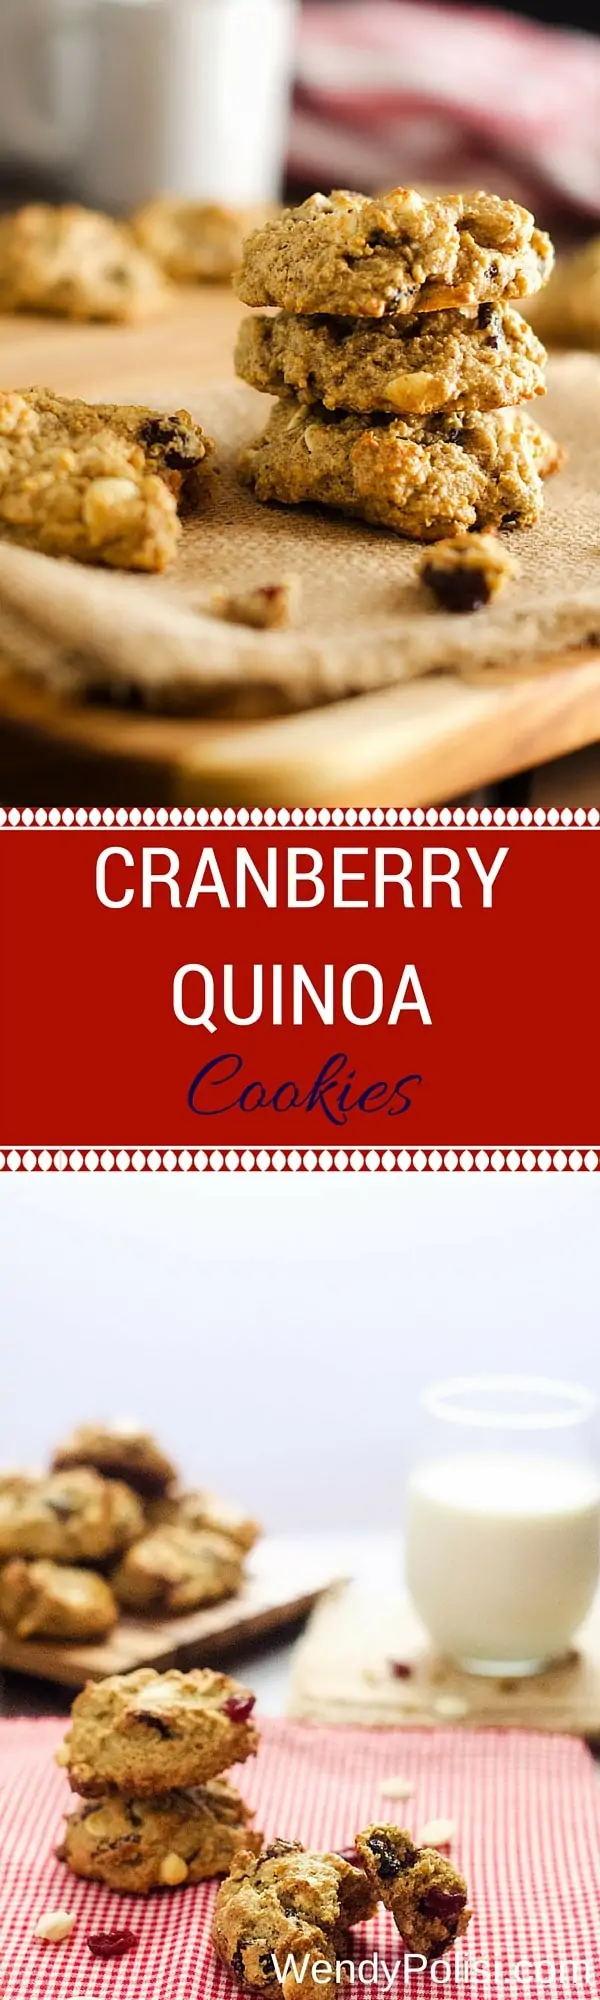 cranberry-quinoa-cookies